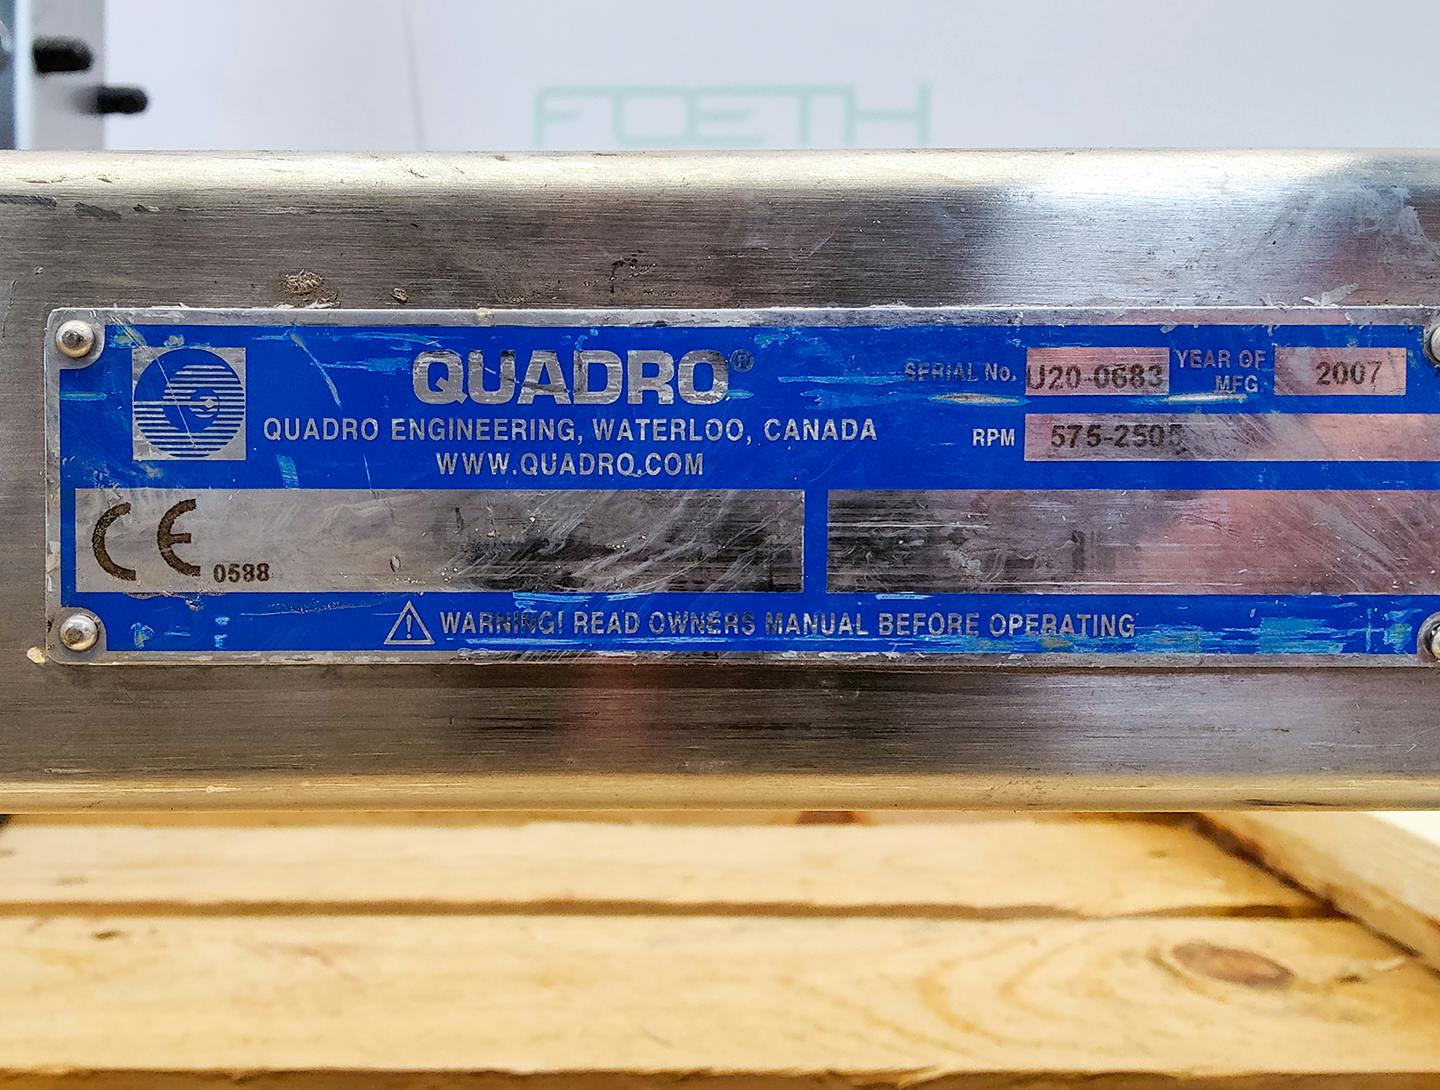 Quadro Canada U20 Underdriven Comill - Granulador de tamiz - image 12